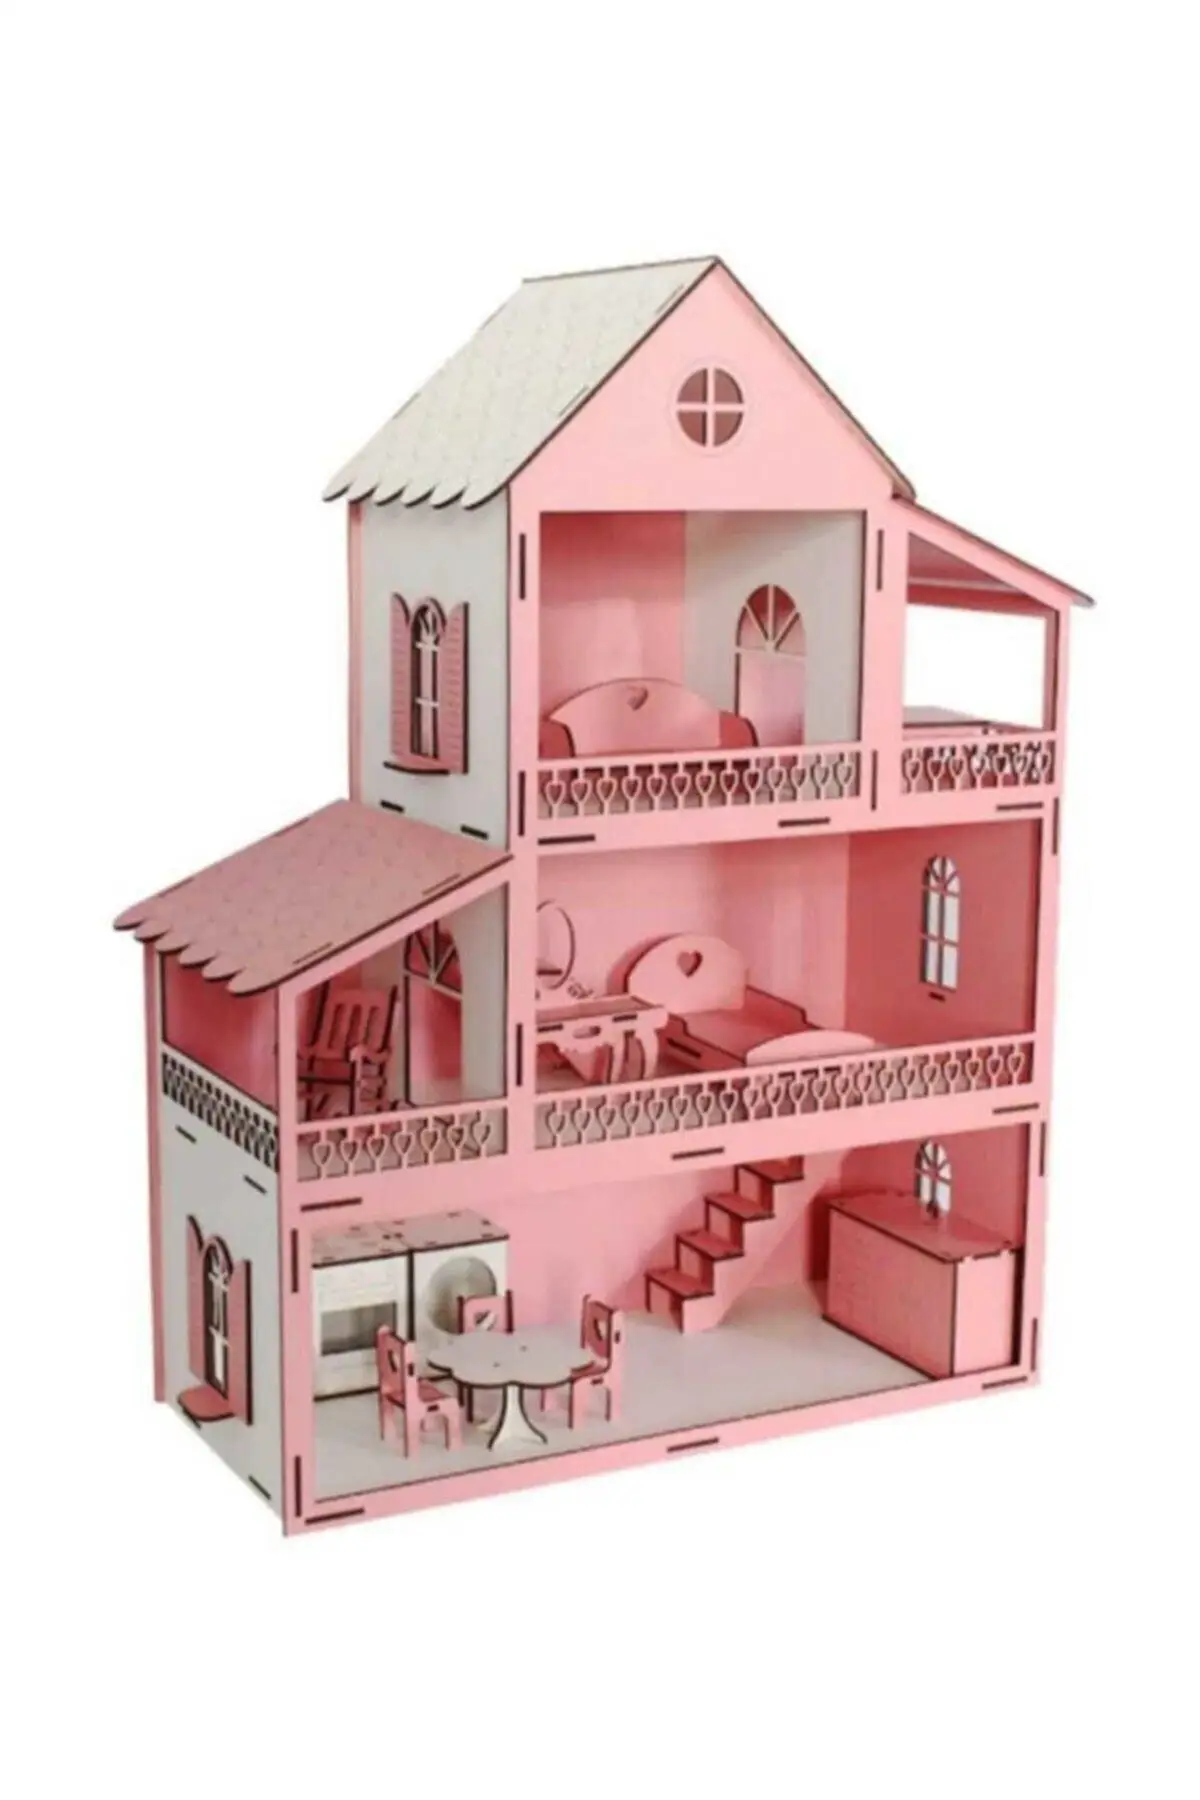 

Деревянный игровой домик розового цвета для девочек ручной работы стильный 3-этажный кукольный домик для 2-4 лет красивый дизайн со светодио...